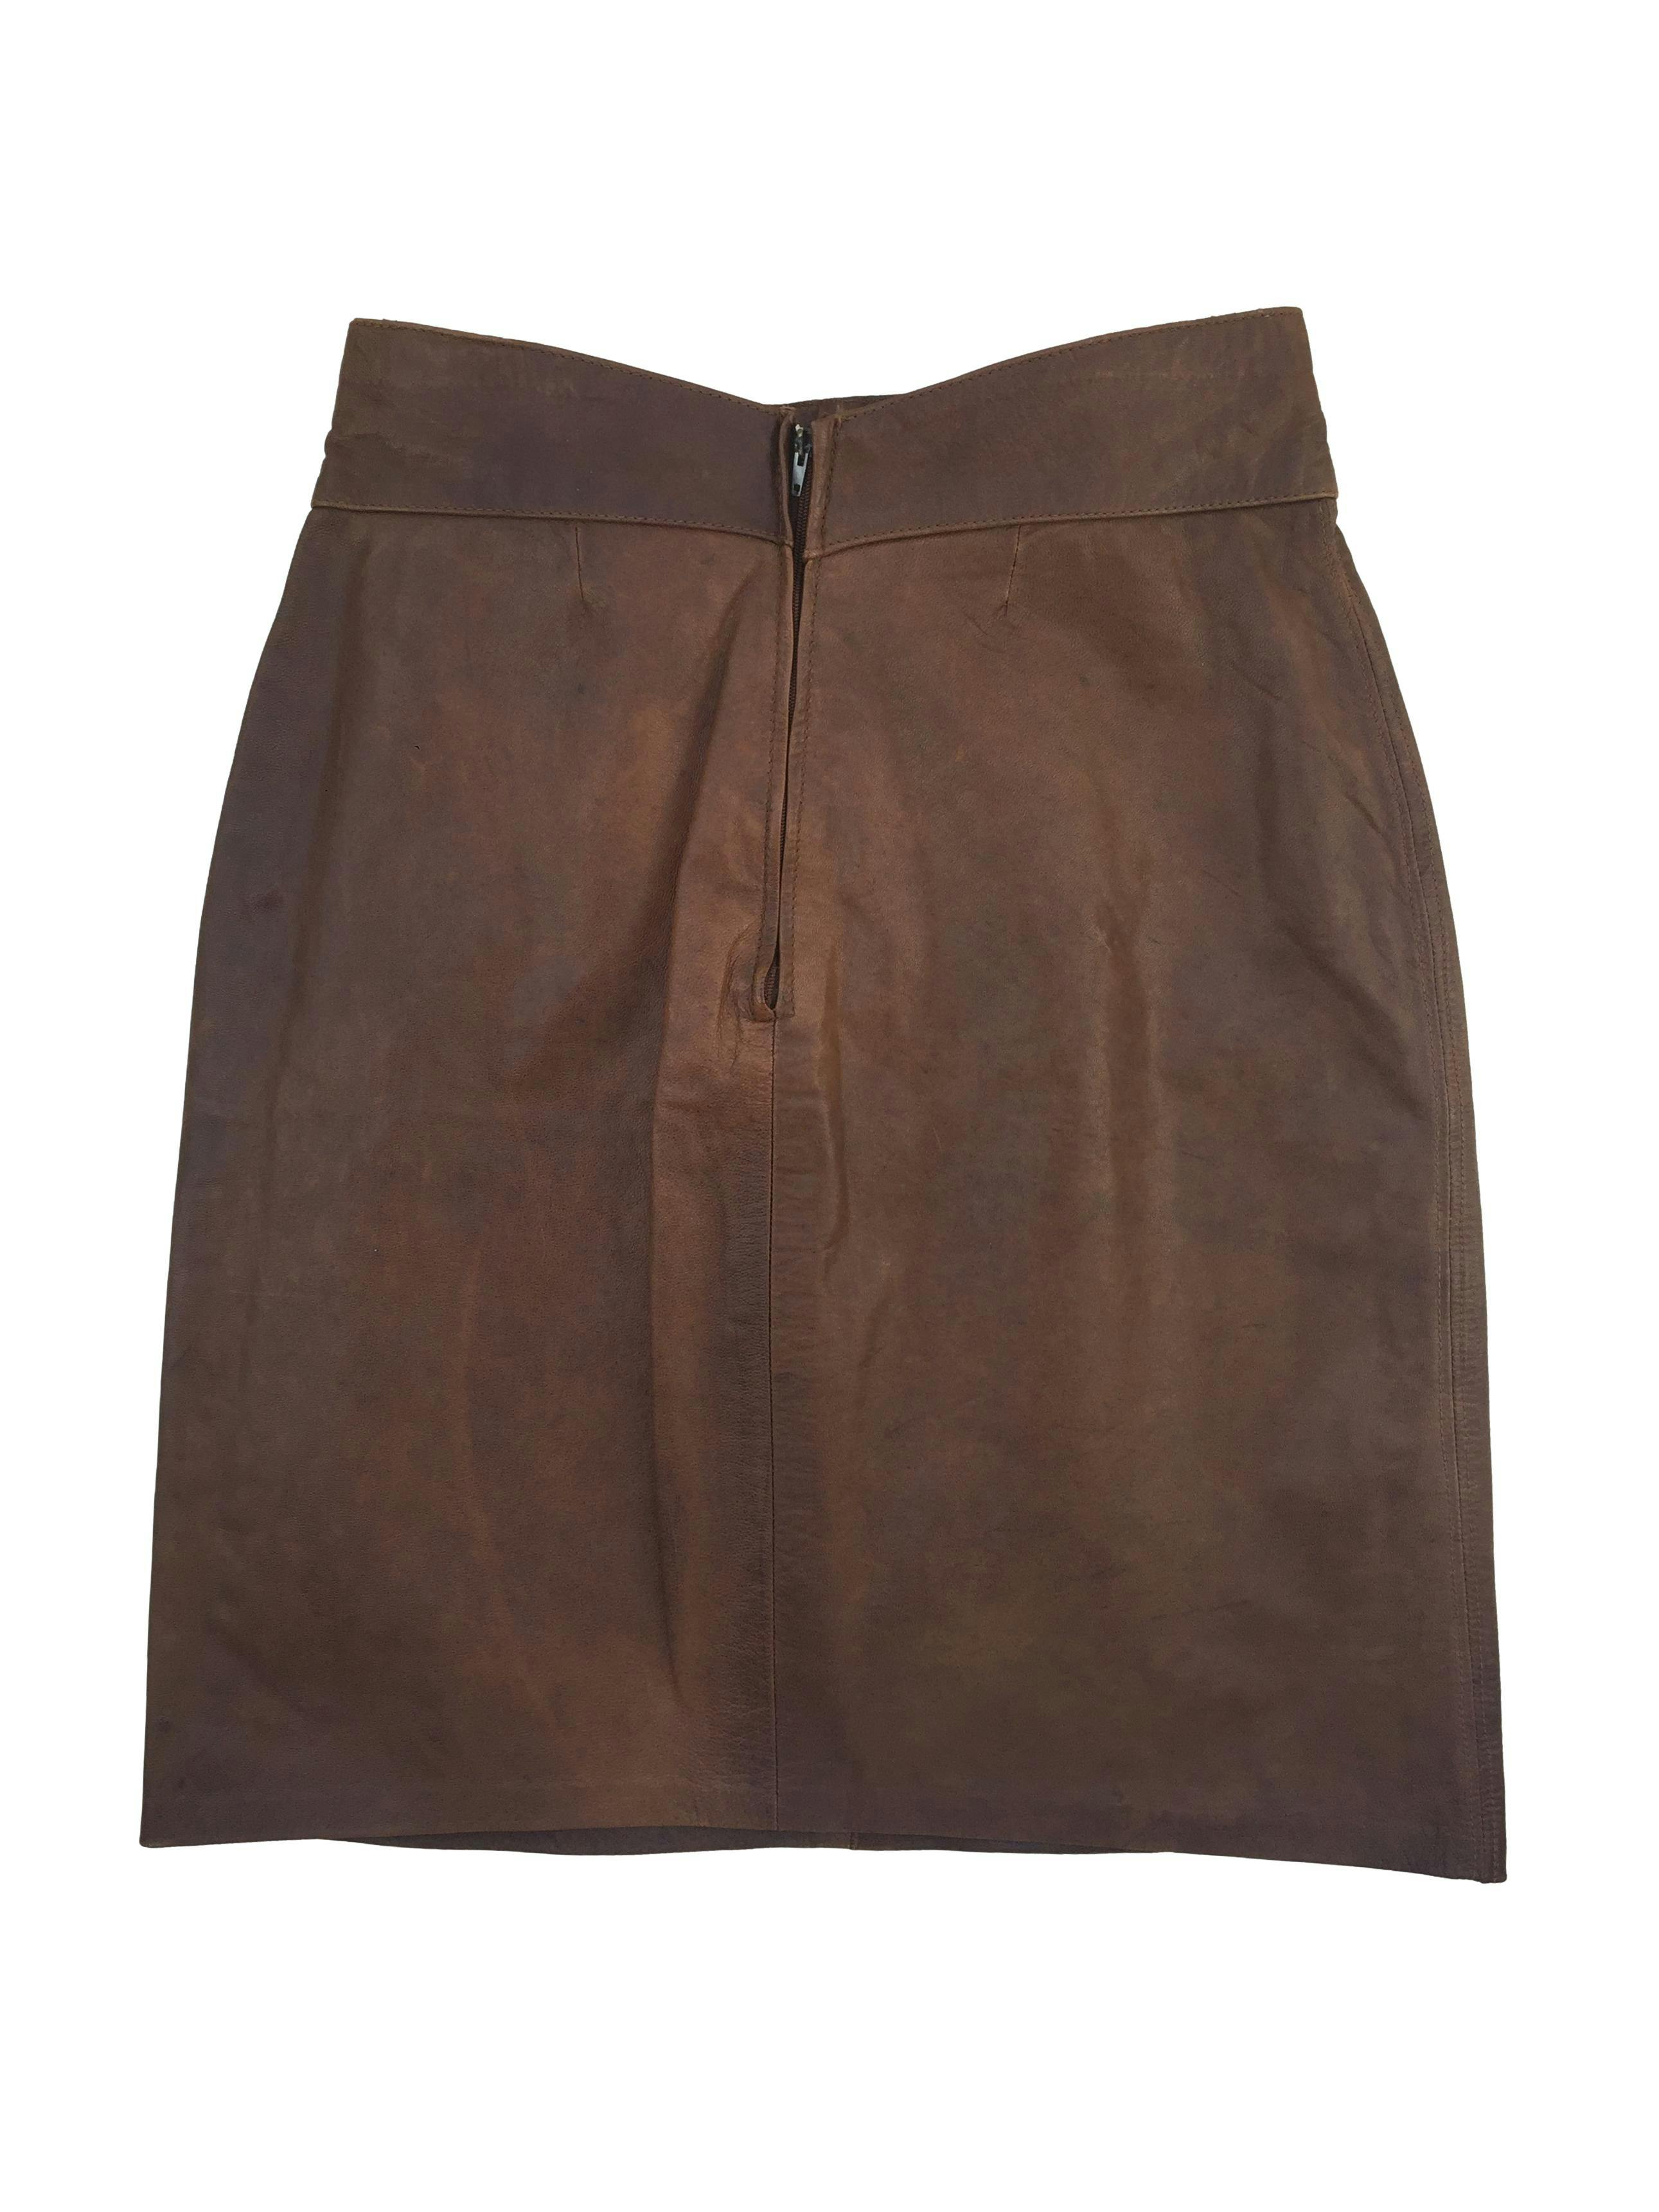 Falda vintage de cuero marrón, forrada y con cierre posterior. Cintura 62cm Largo 49cm